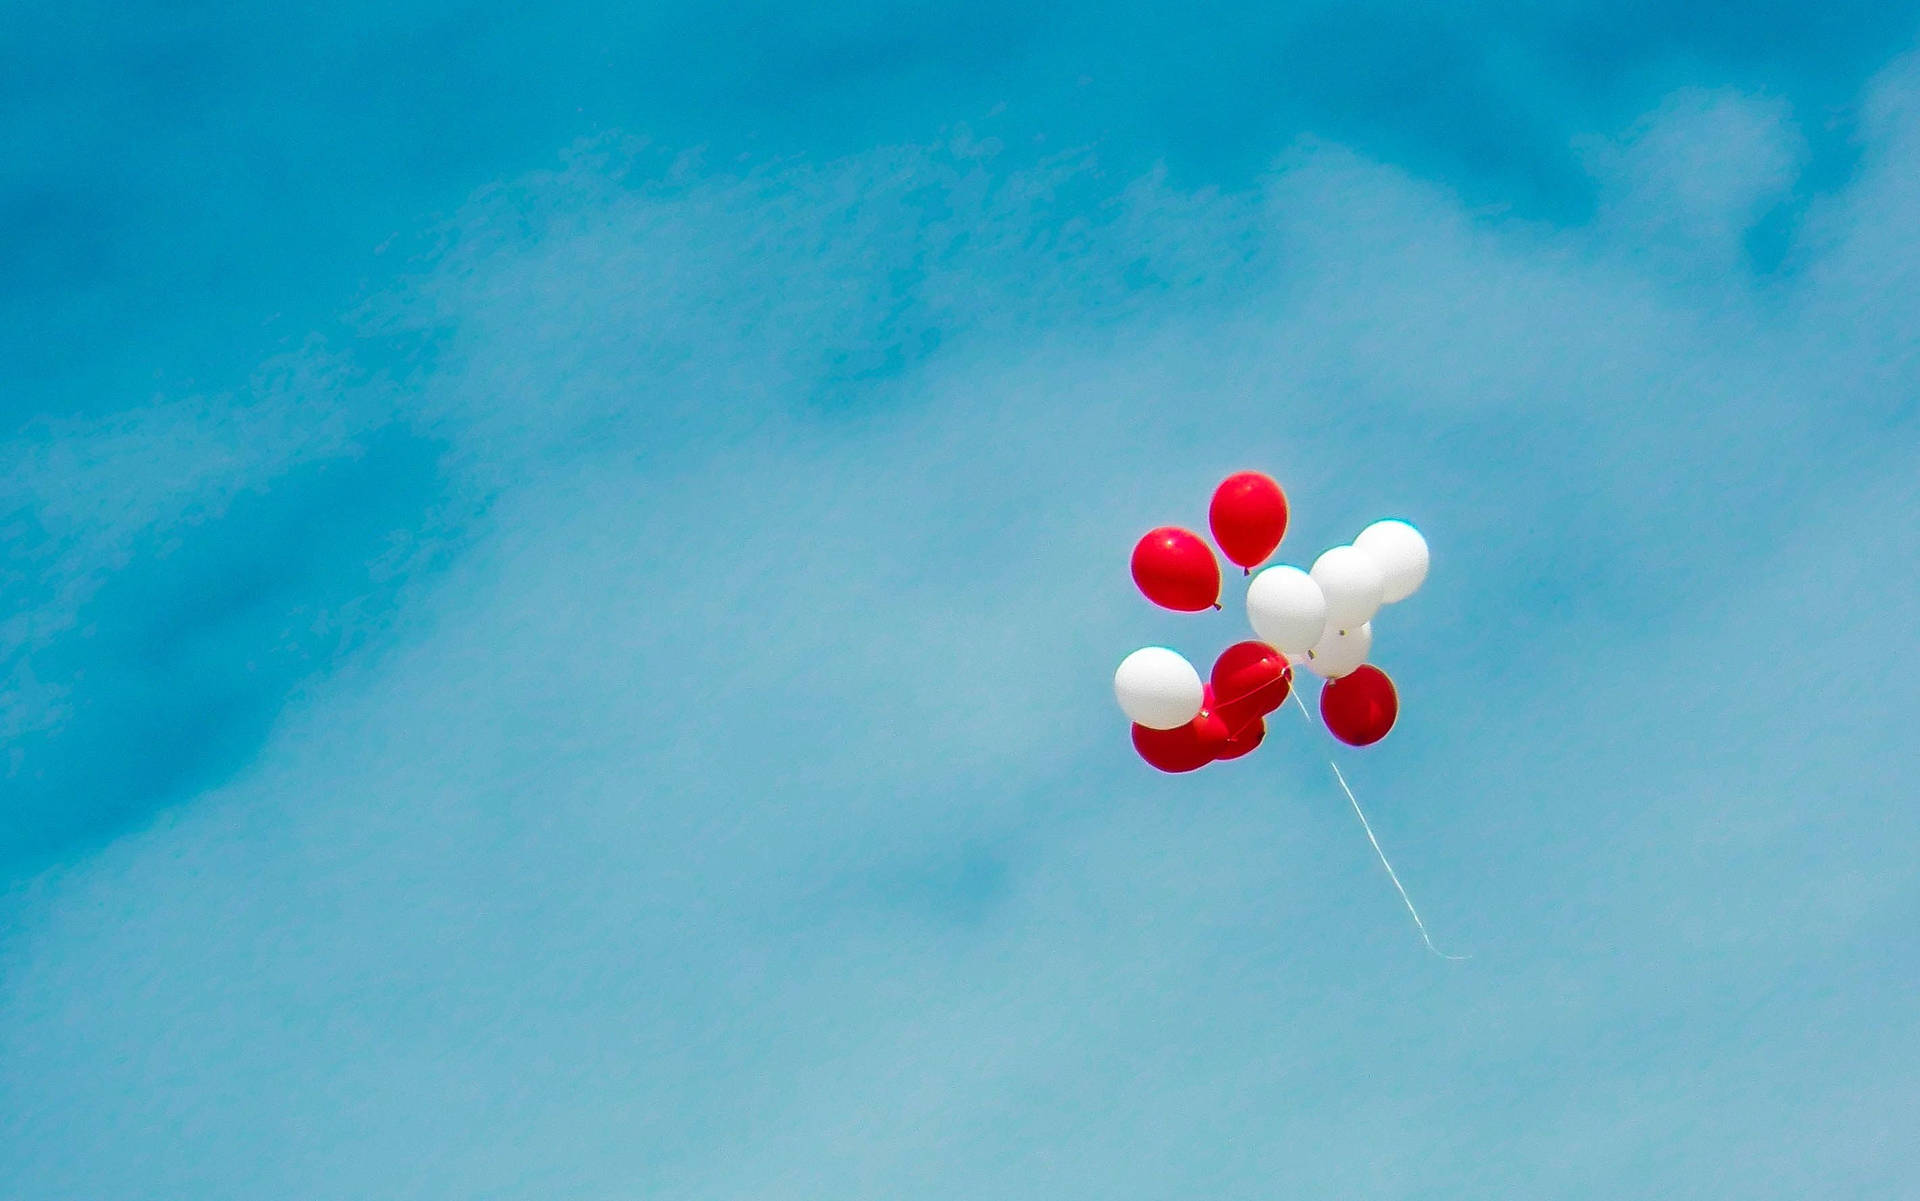 Balõesem Nuvem Azul Estética Papel de Parede